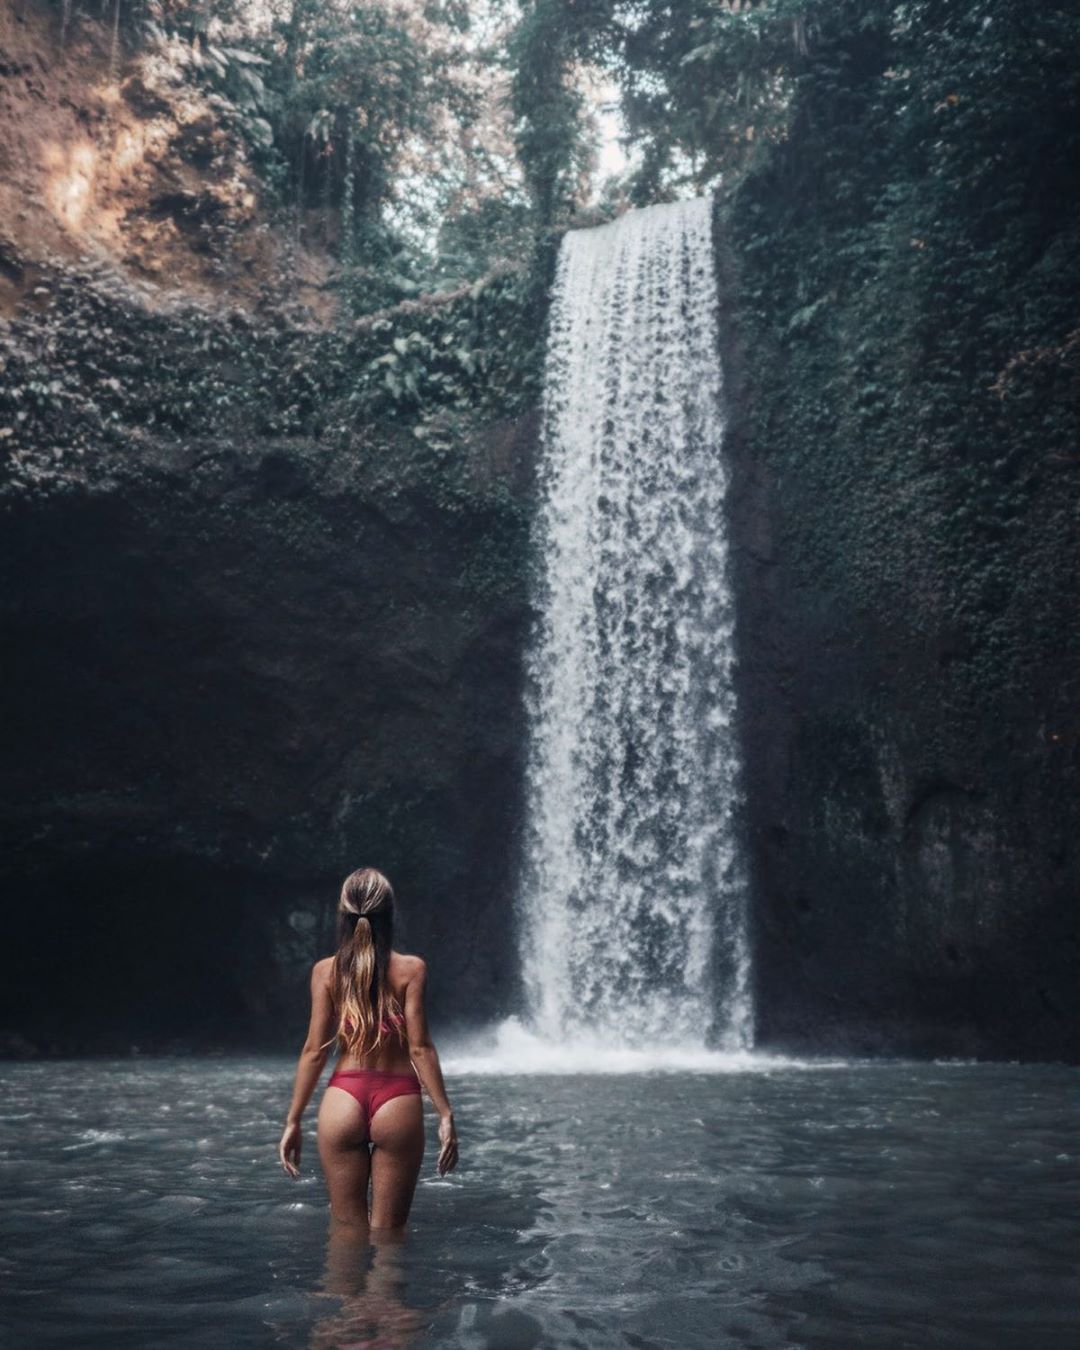 Bali Waterfalls: Tibumana Waterfall by @margozhuravleva